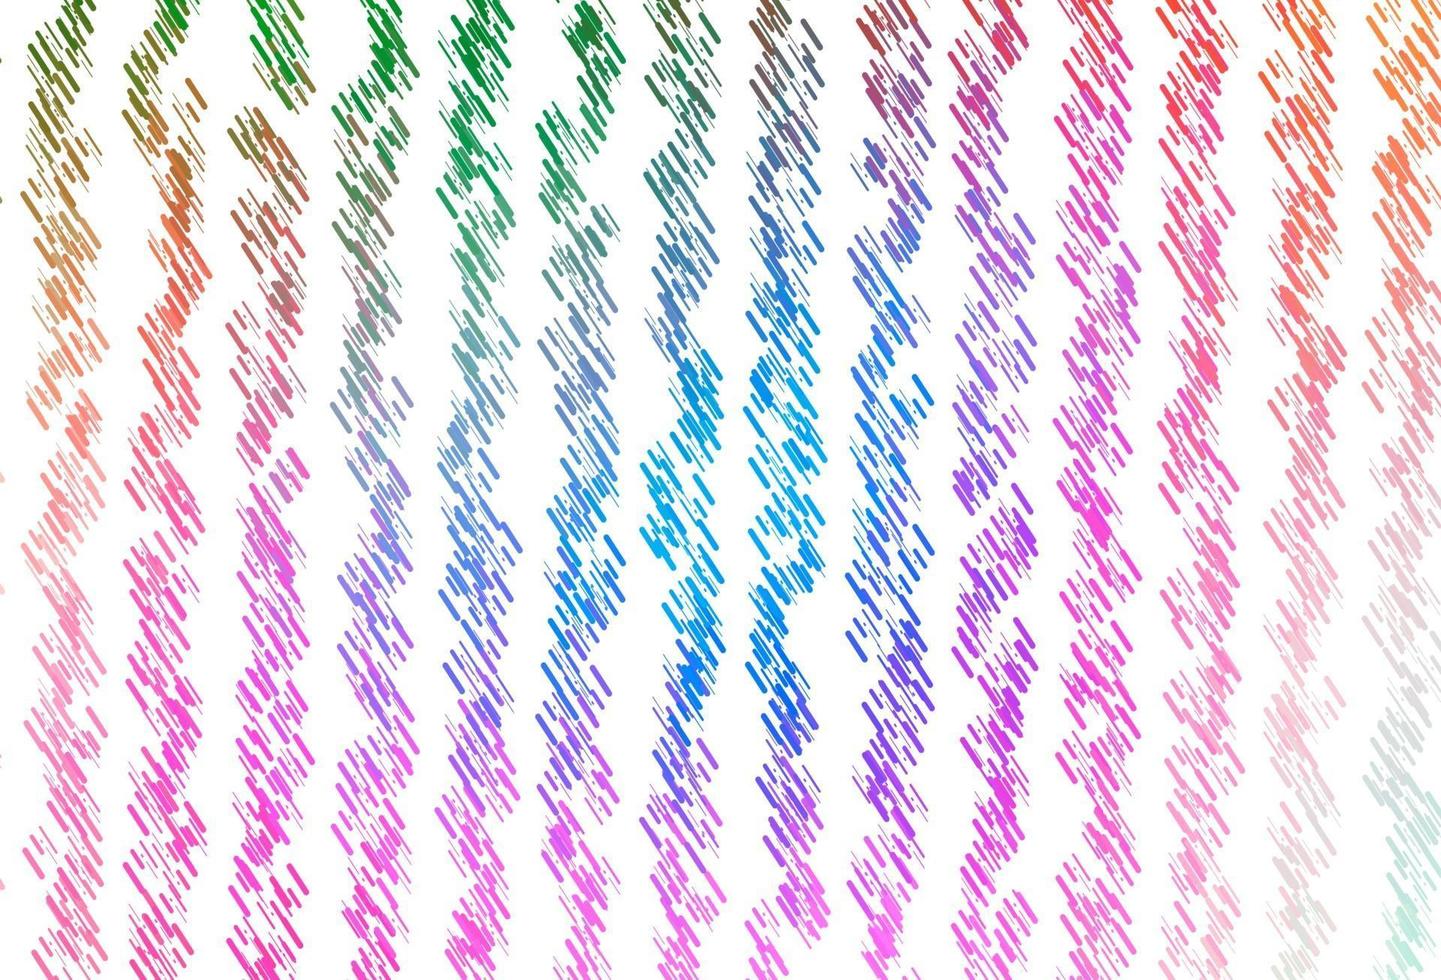 Plantilla de vector de arco iris multicolor claro con palos repetidos.